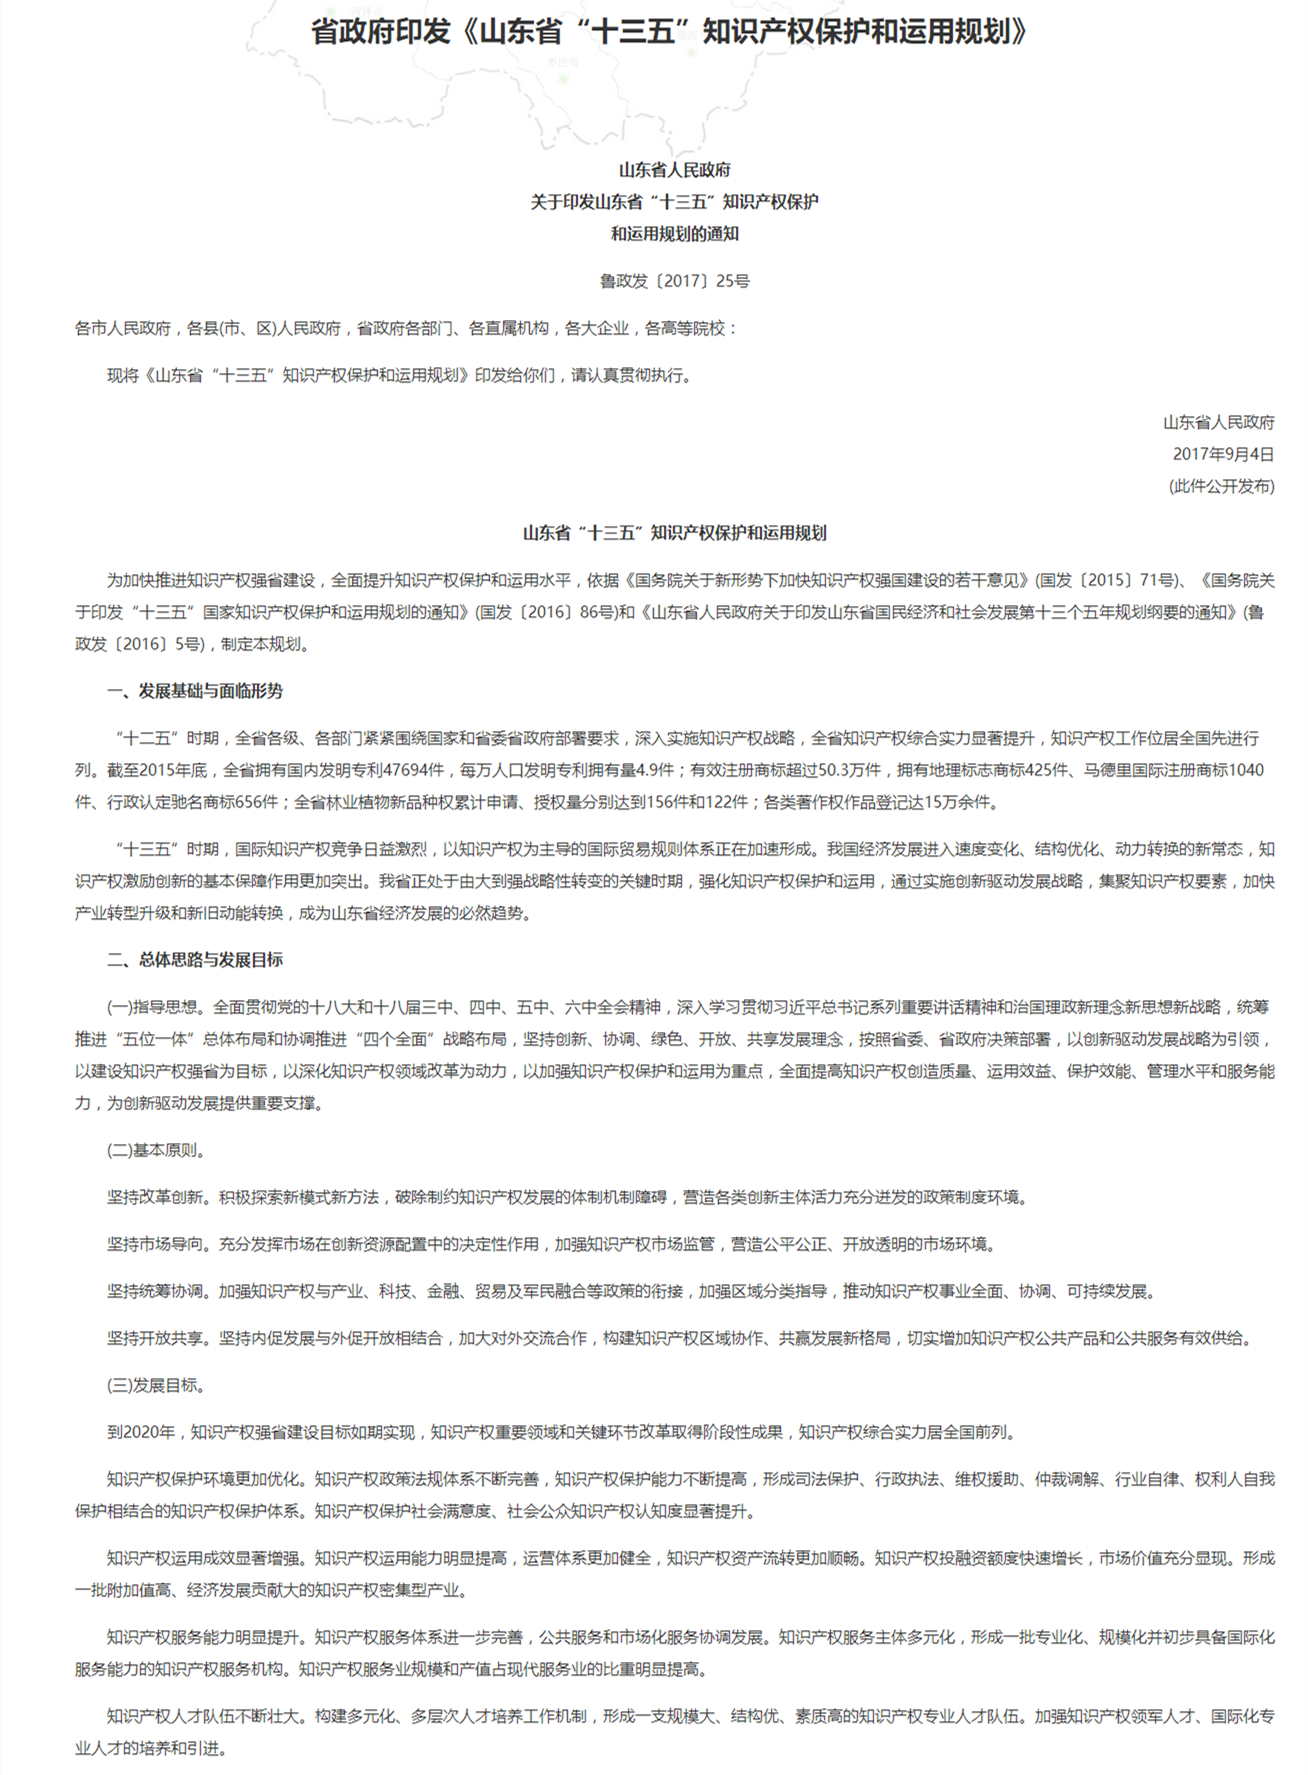 山東省“十三五”智慧財產權保護和運用規劃